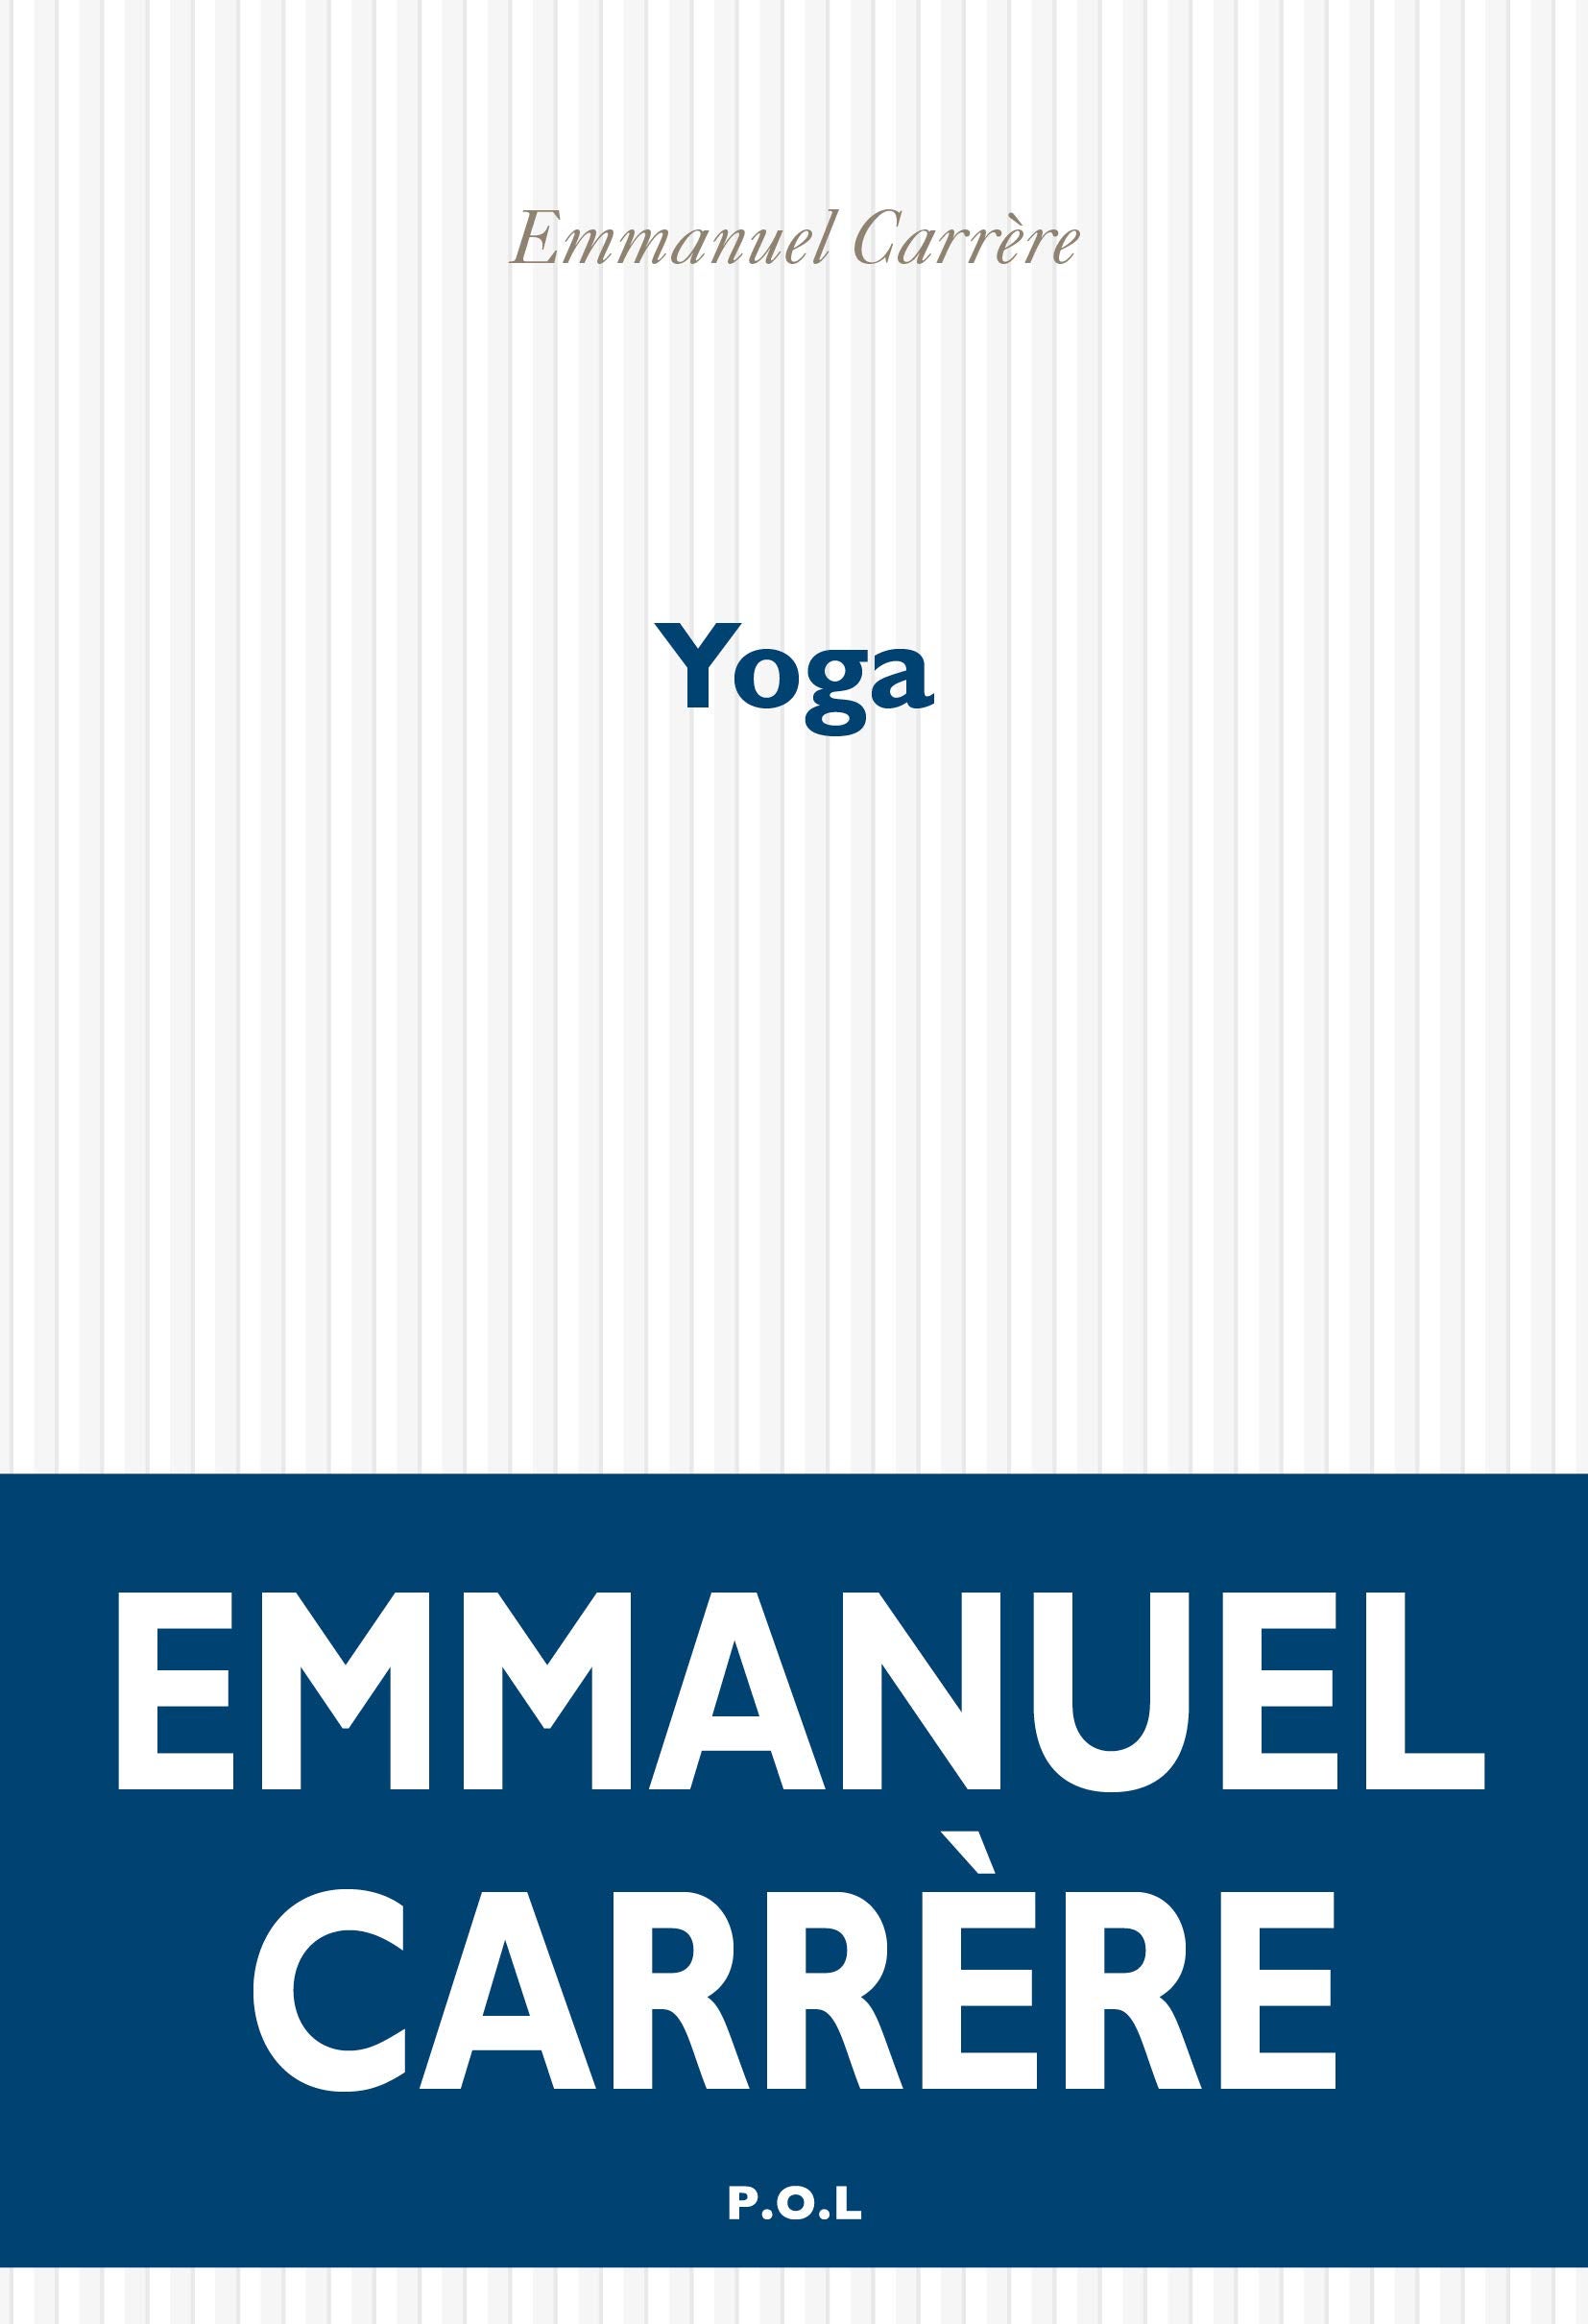 Emmanuel Carrere’s Yoga